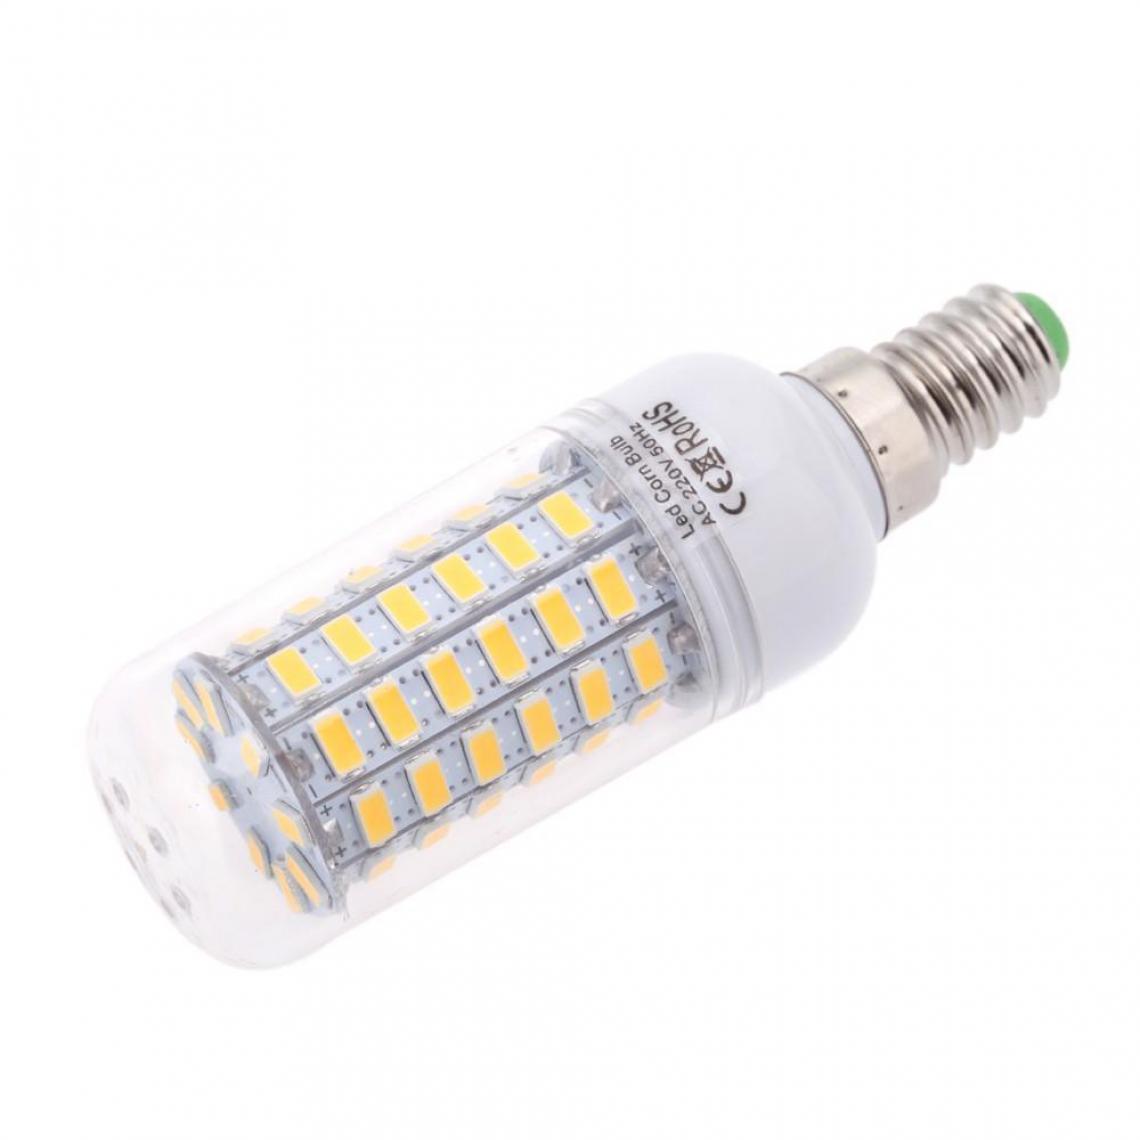 Justgreenbox - Ampoule de maïs à économie d'énergie 360 degrés 200-240V E14, Warm Blanc, 20W - Ampoules LED